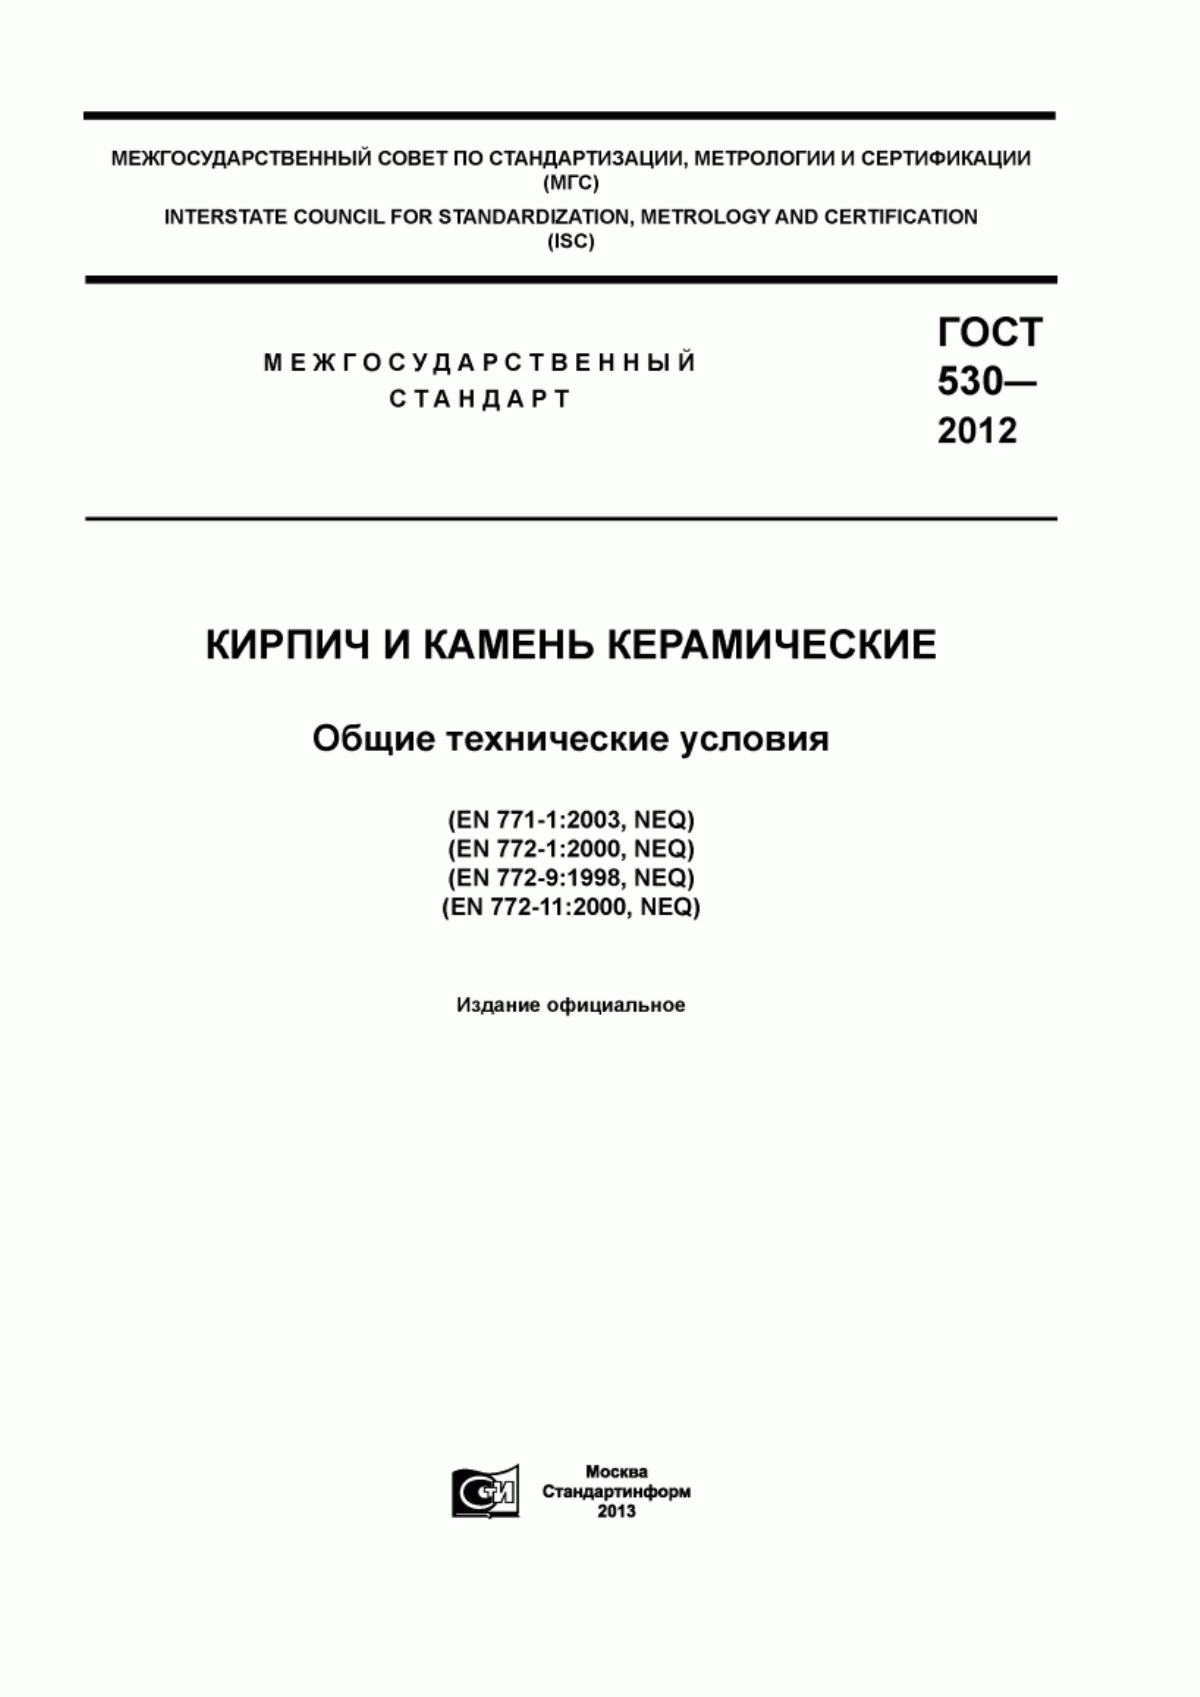 ГОСТ 530-2012 Кирпич и камень керамические. Общие технические условия